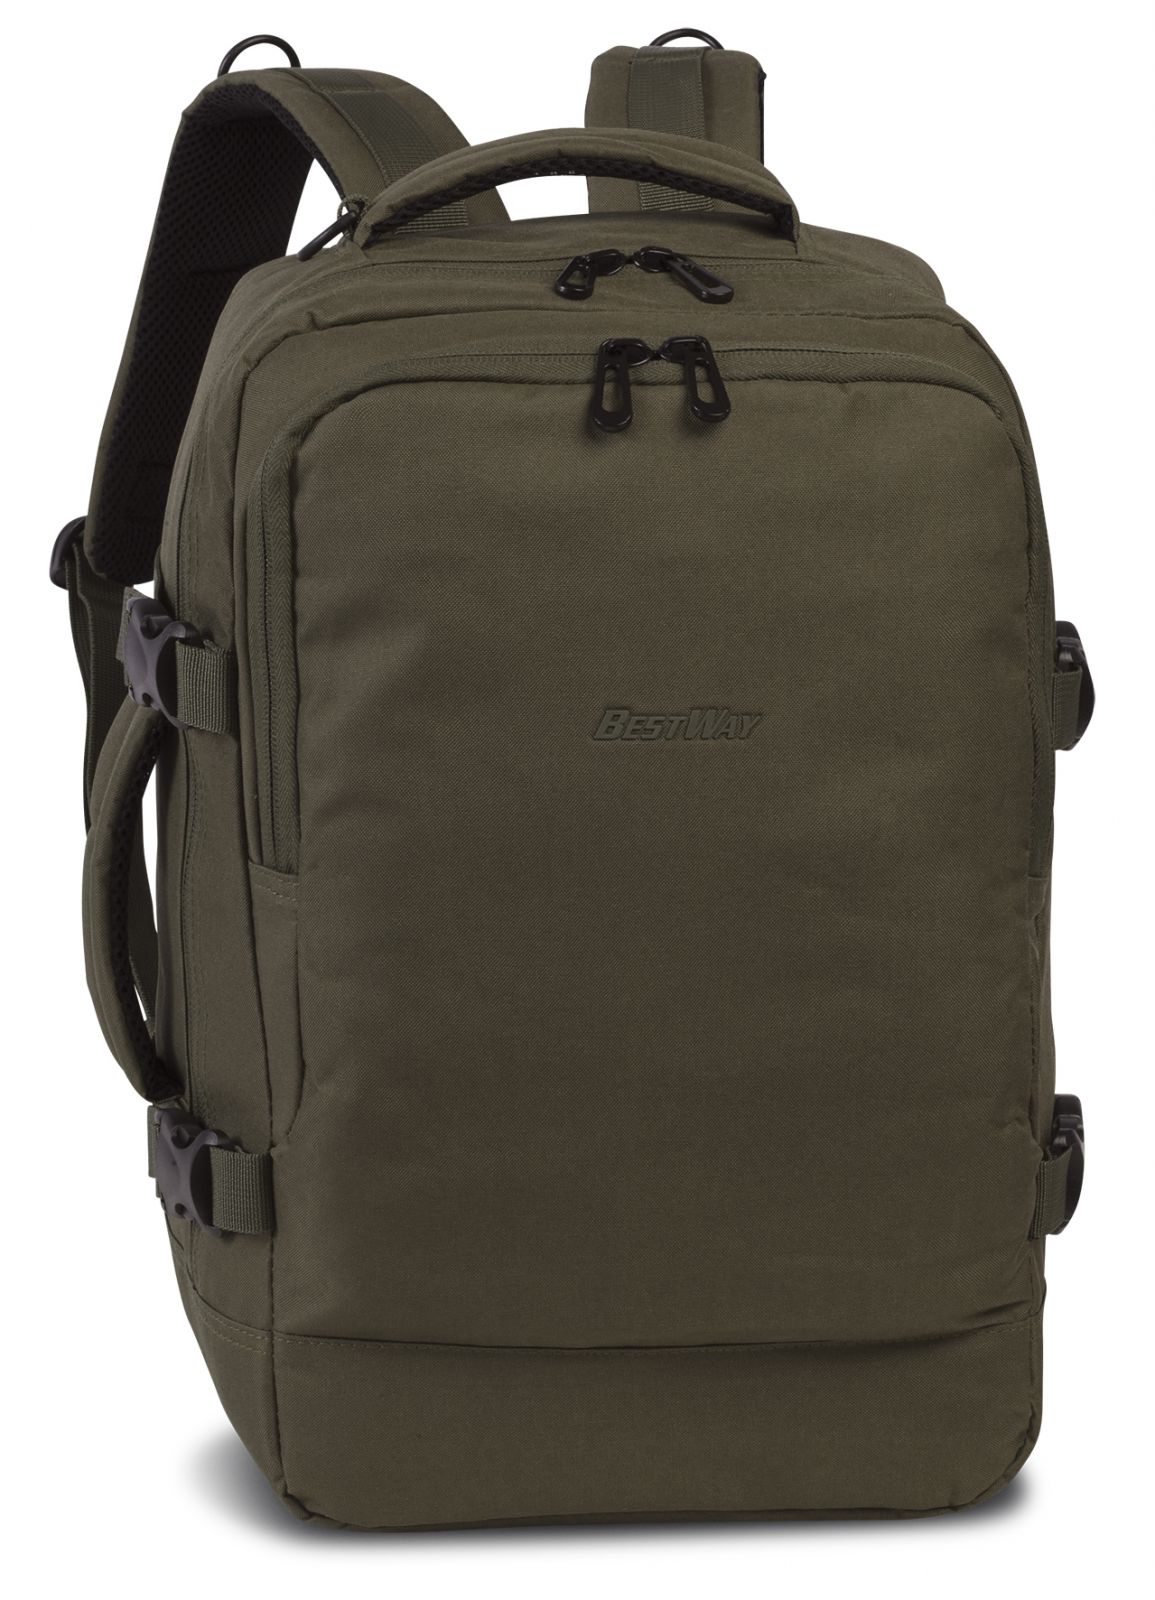 Příruční zavazadlo - batoh pro RYANAIR 40328-2600 40x25x20 OLIV GREEN